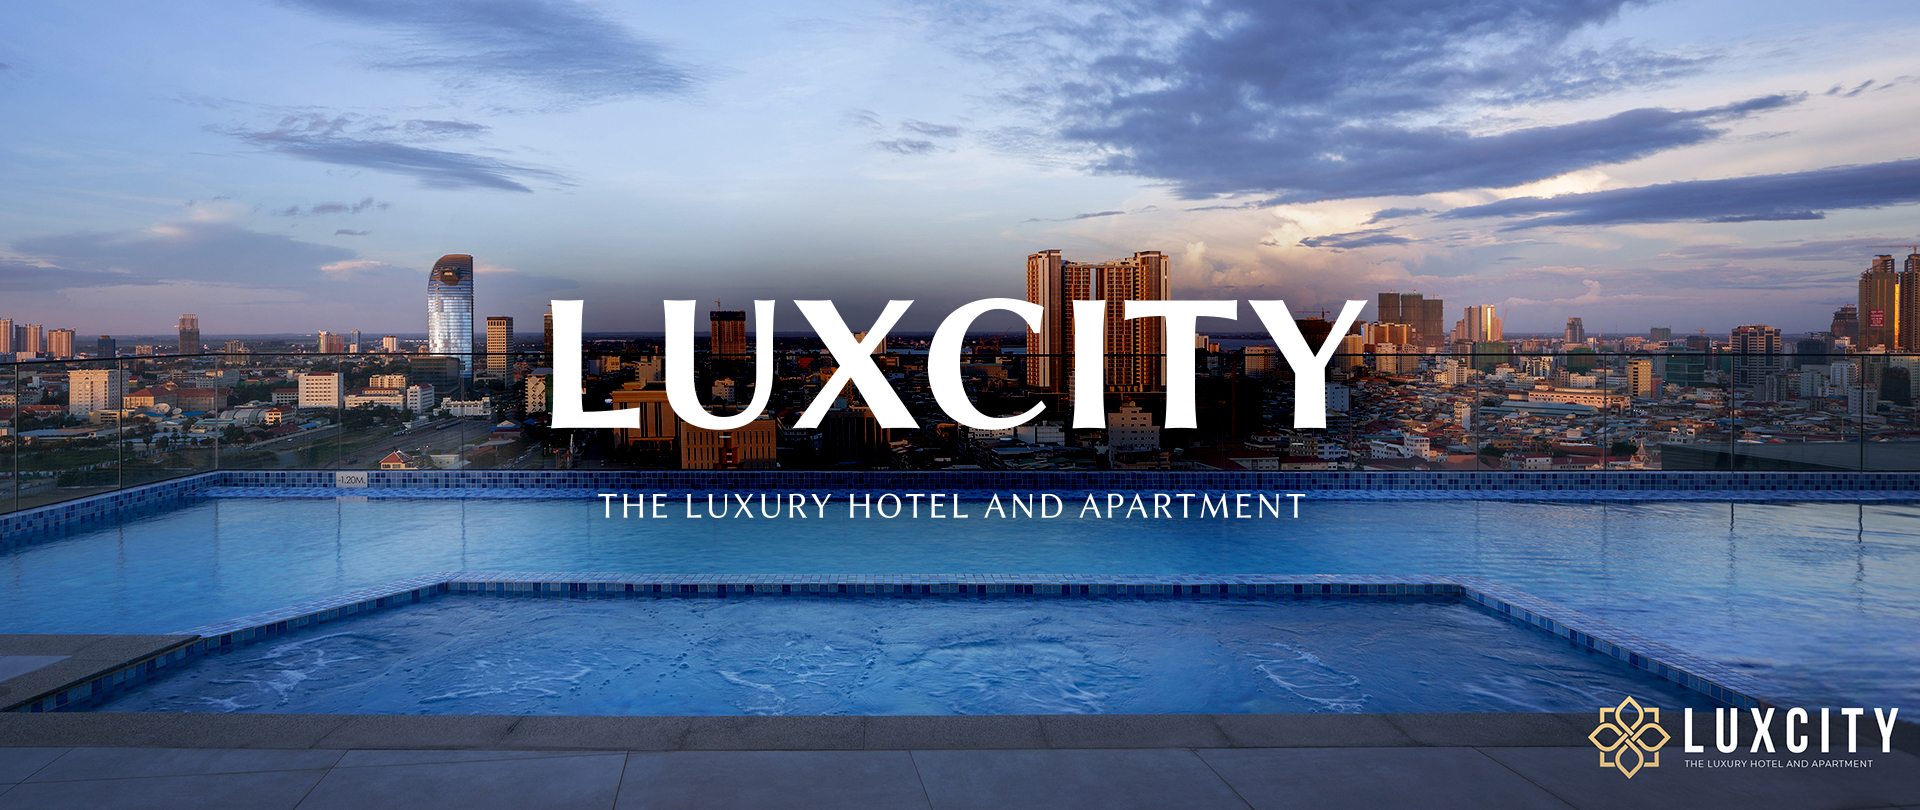 Luxcity Hotel And Apartment Phnom Penh Cambodia 